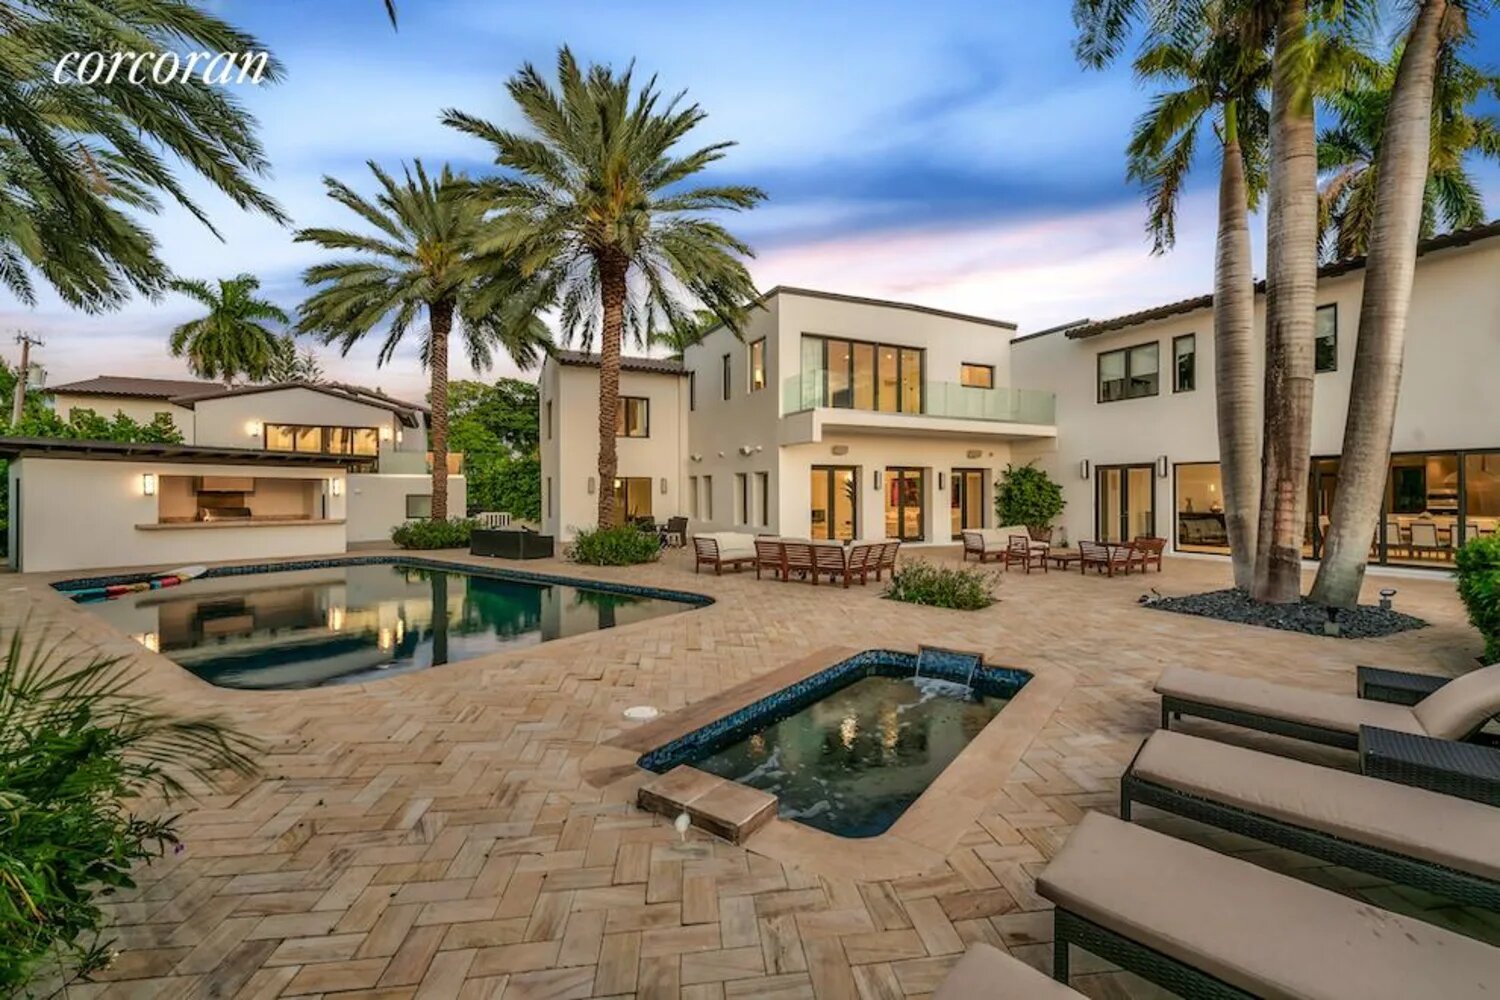 Casa Jennifer Lopez y Ben Affleck en Miami patio interior con piscinas